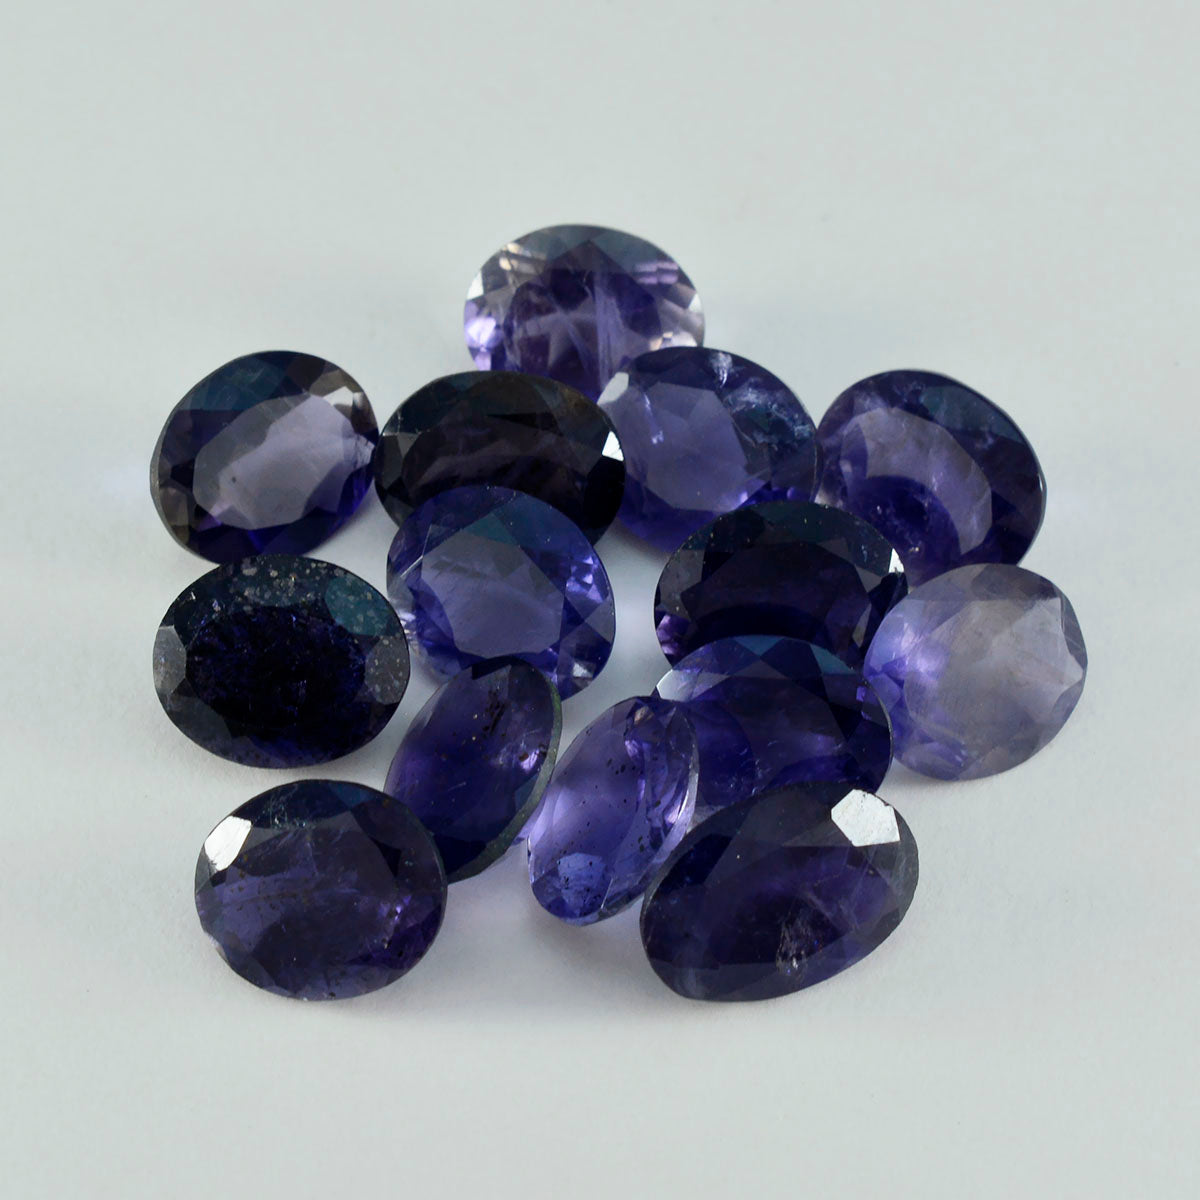 riyogems 1шт синий иолит ограненный 9x11 мм овальная форма качество AAA россыпь драгоценные камни